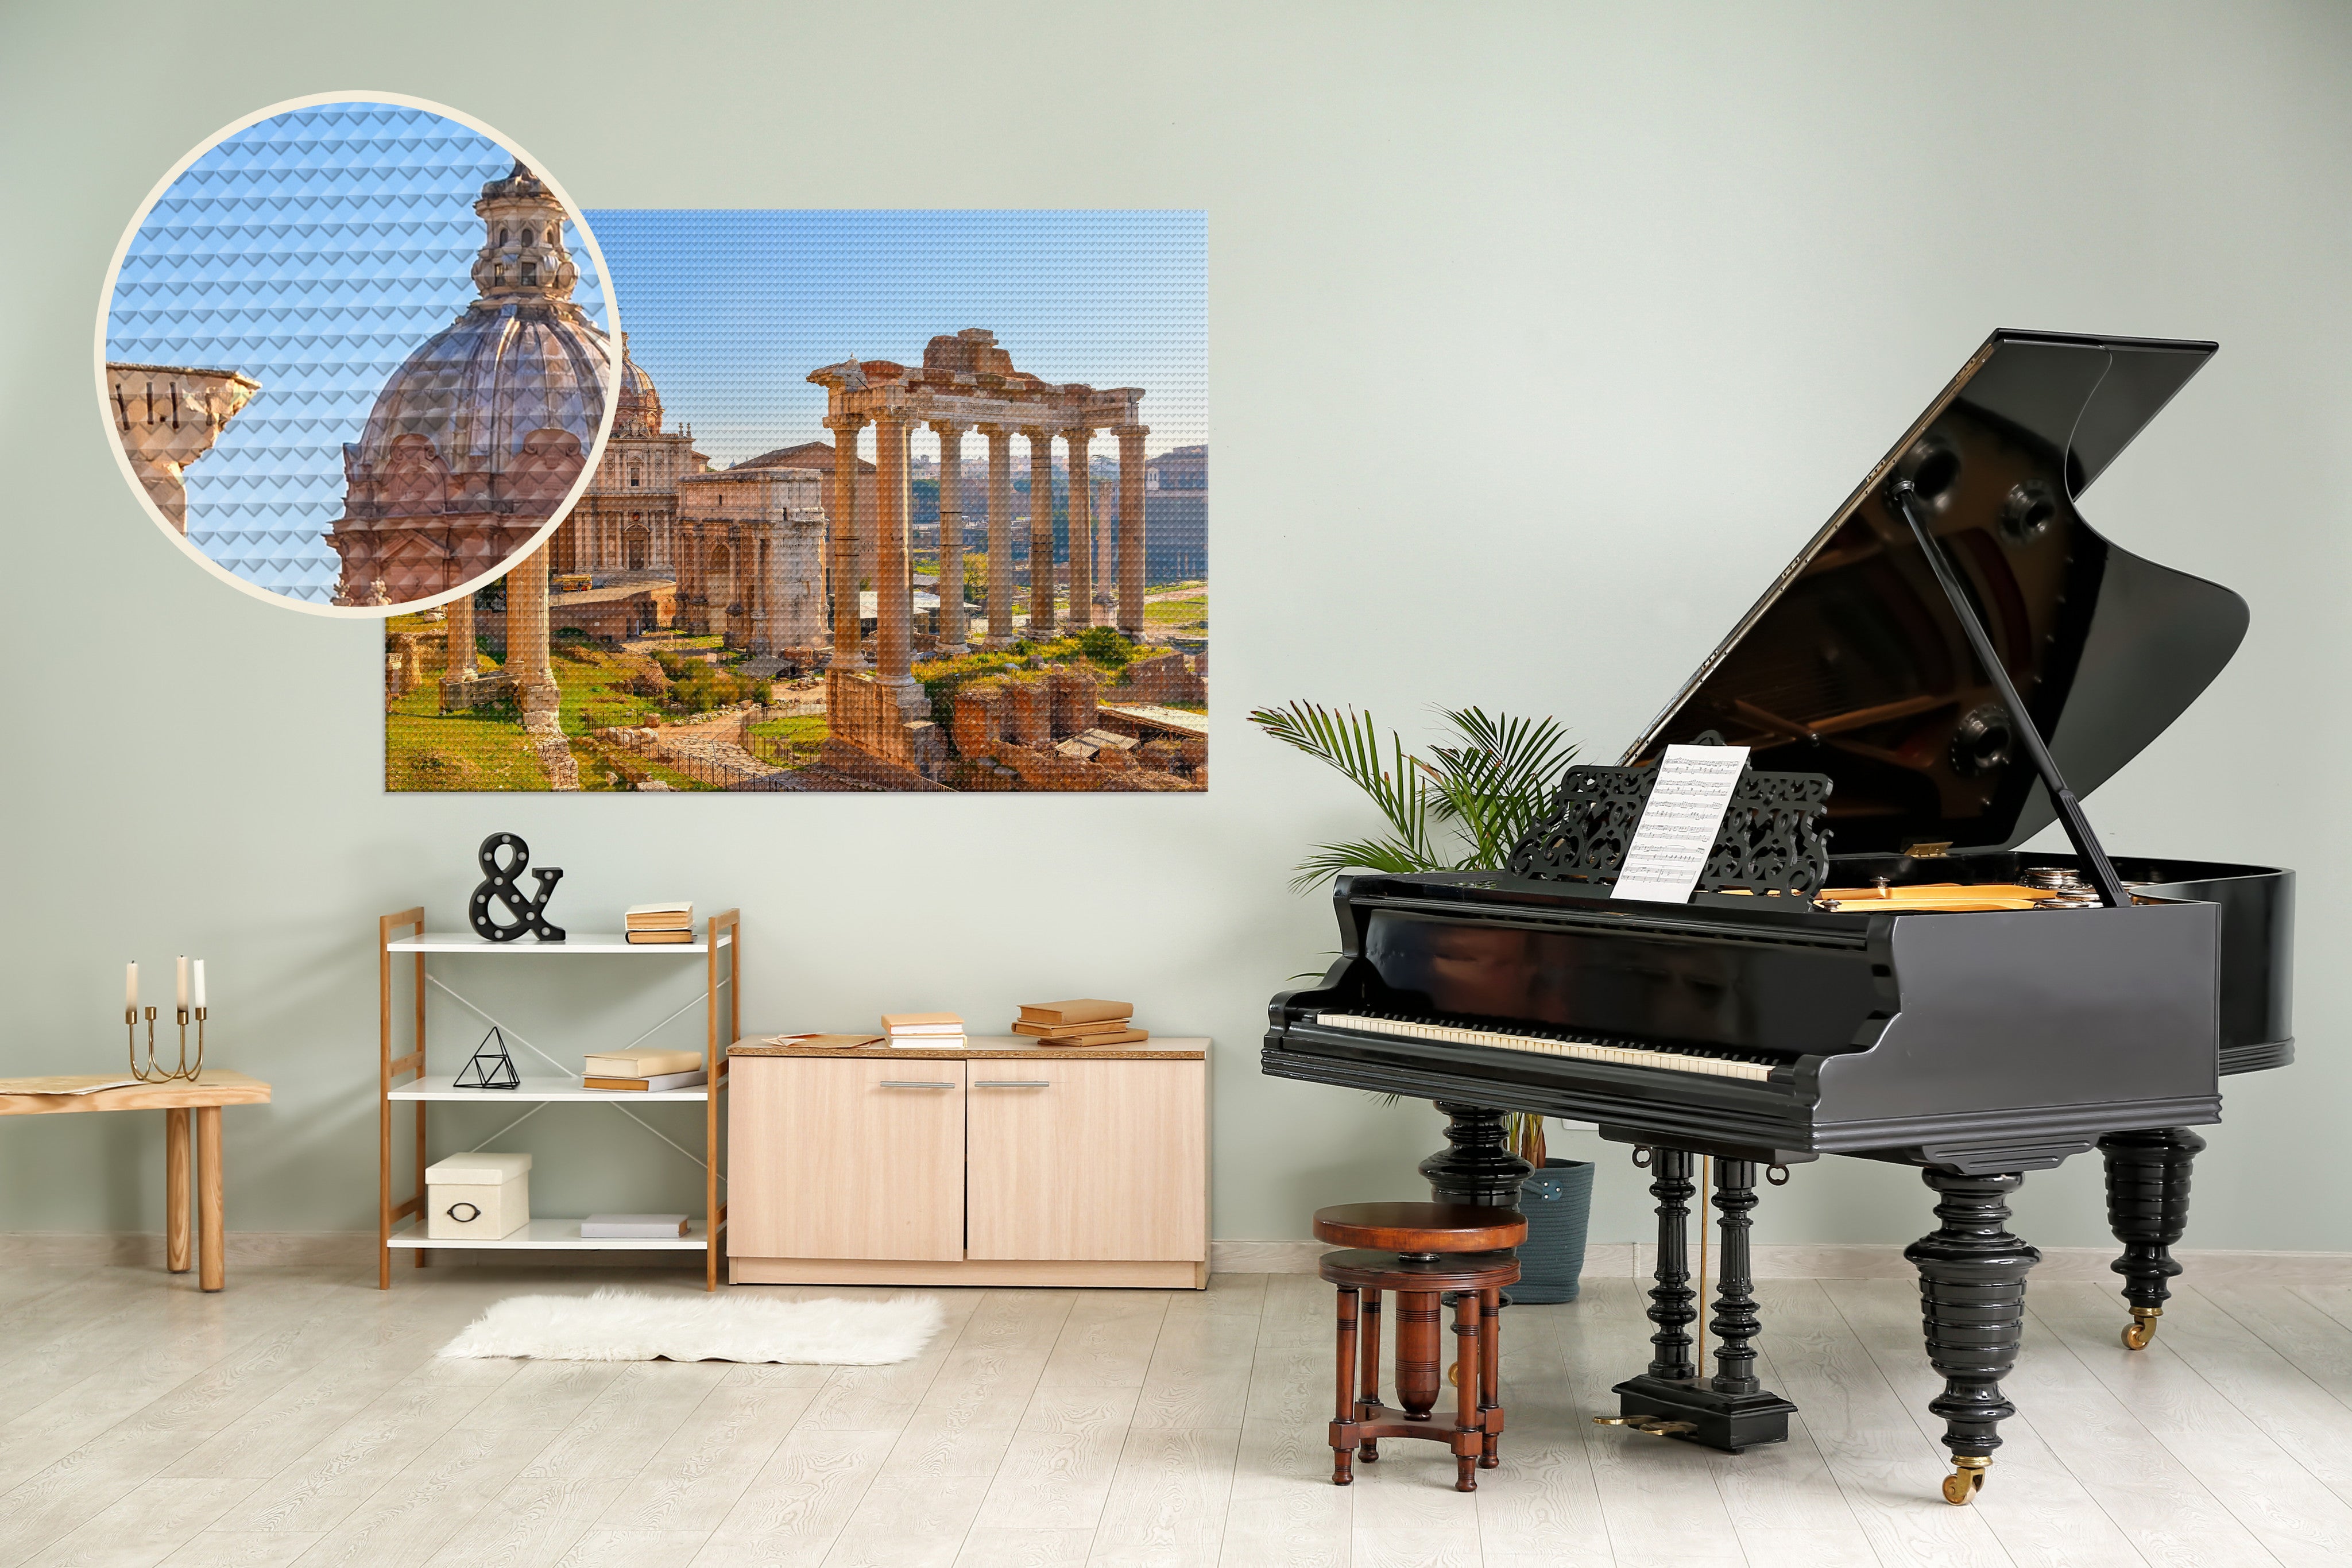 Zimmer mit Piano und and der Wand eine Leinwand aus Akustikstoff mit einem griechischen Motiv